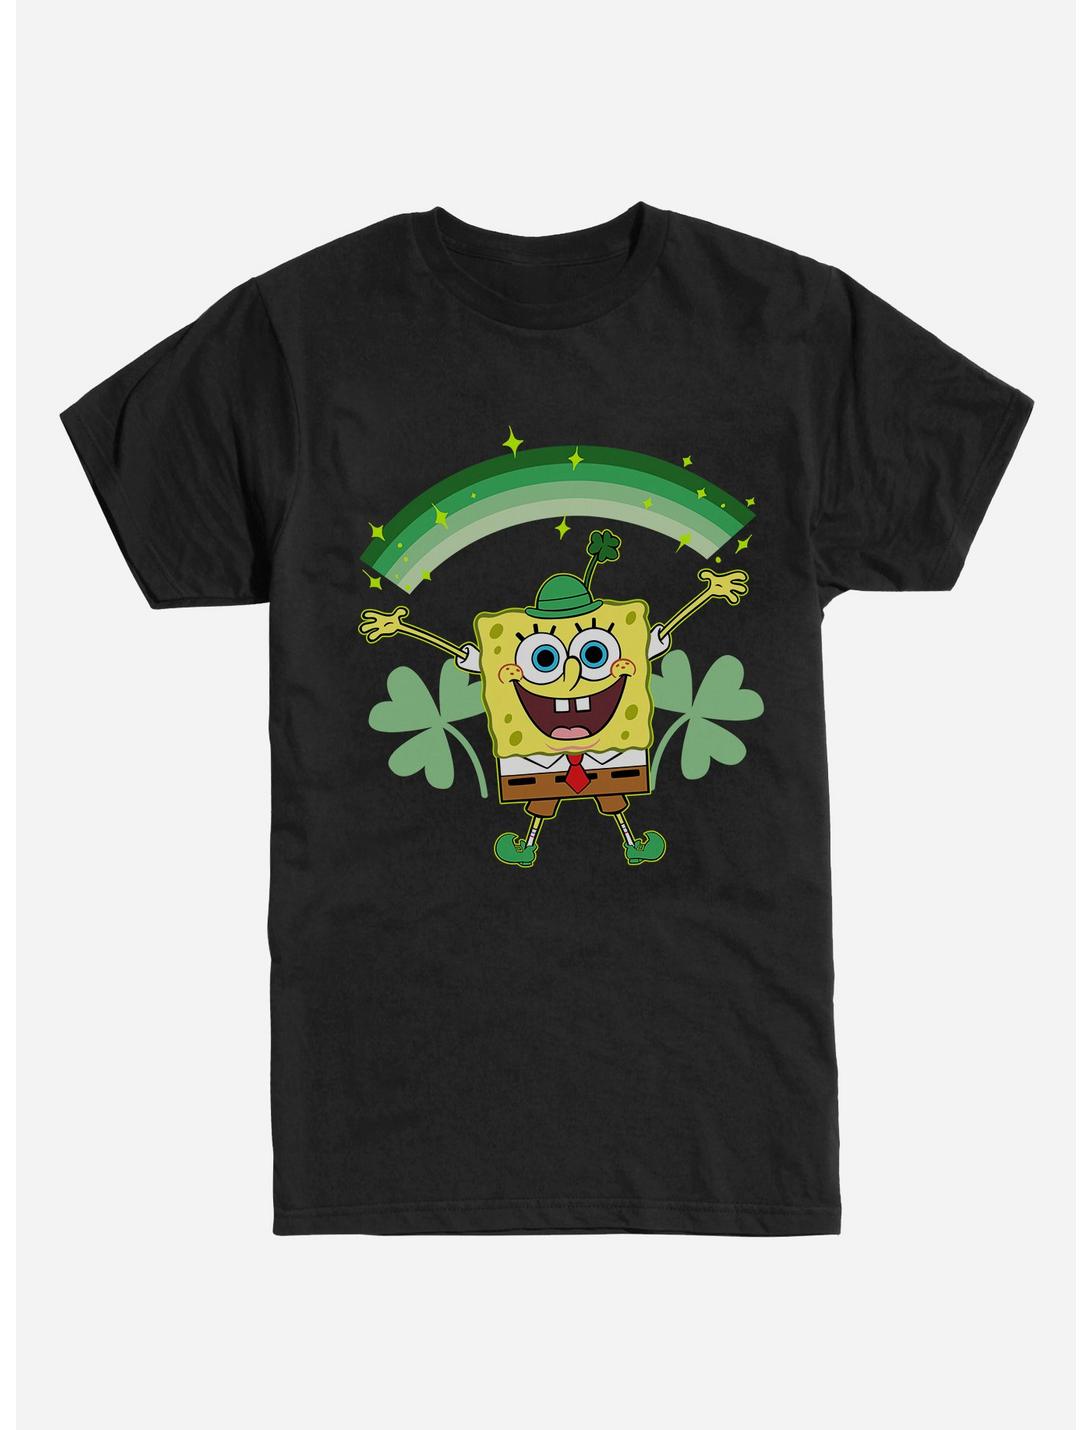 SpongeBob SquarePants St. Patrick's Day Shamrocks Black T-Shirt, BLACK, hi-res